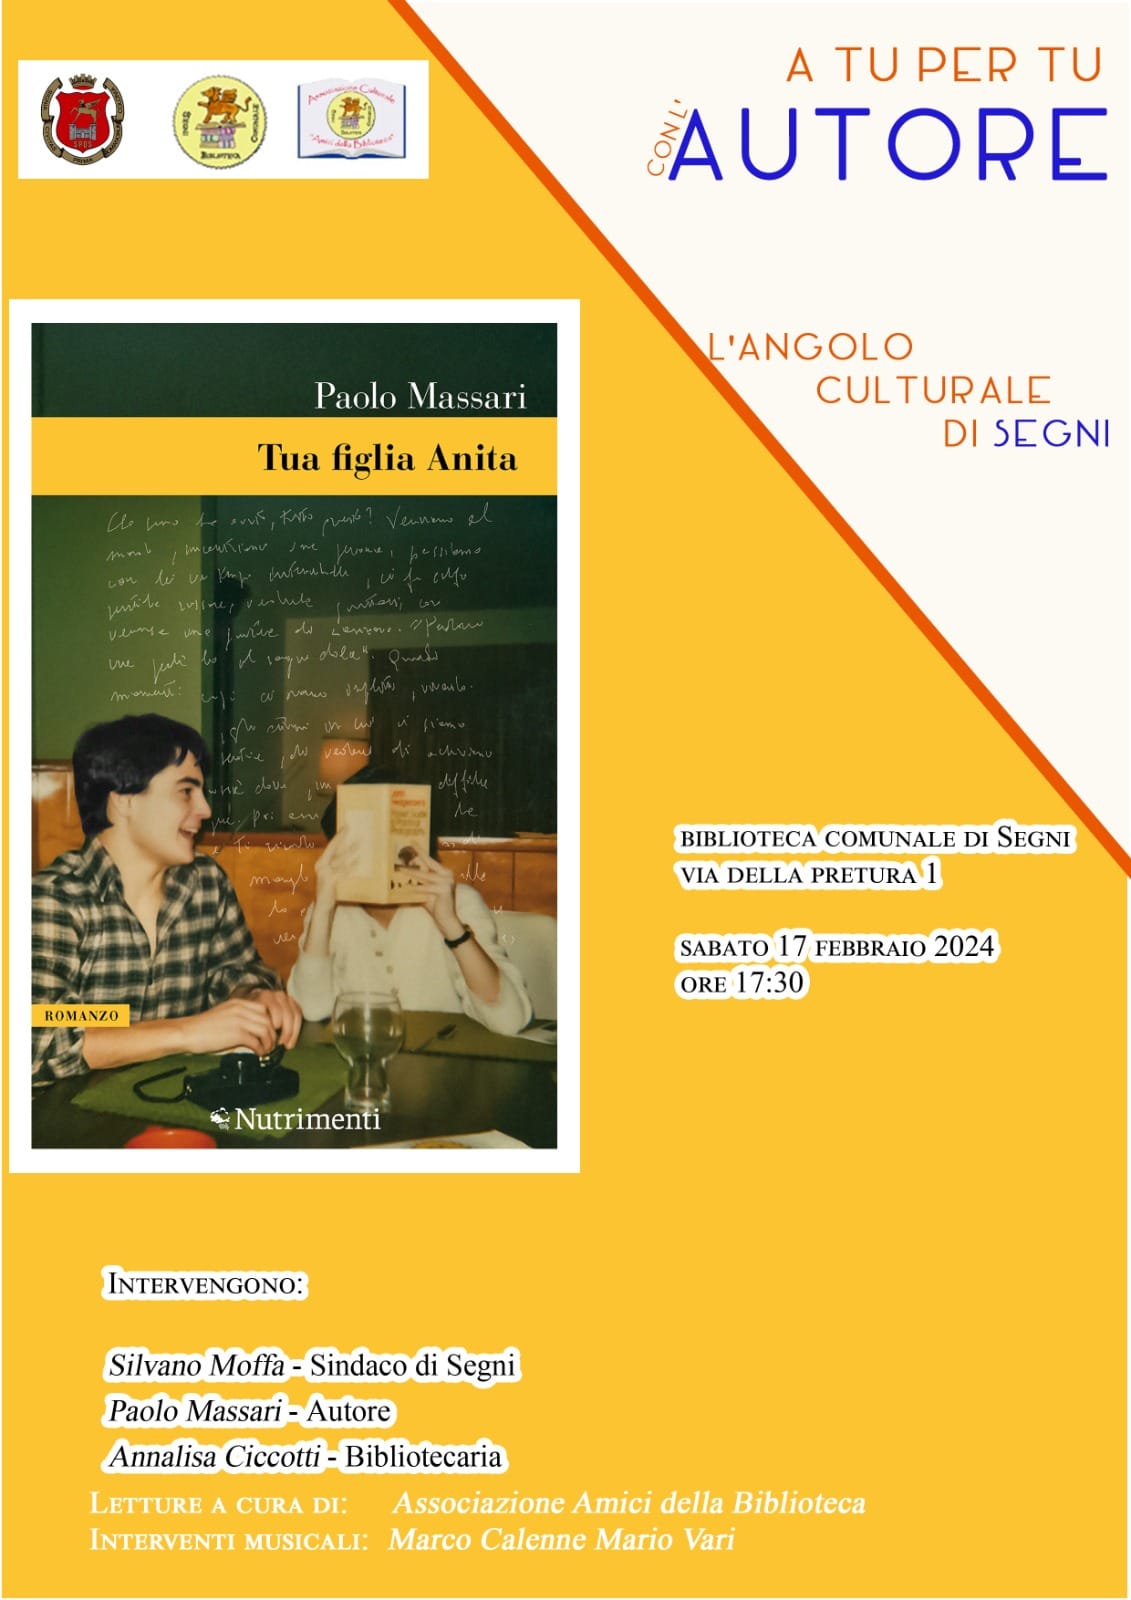 Comune di Segni: A tu per tu con l'autore, presentazione libro di Paolo Massari @ Comune di Segni